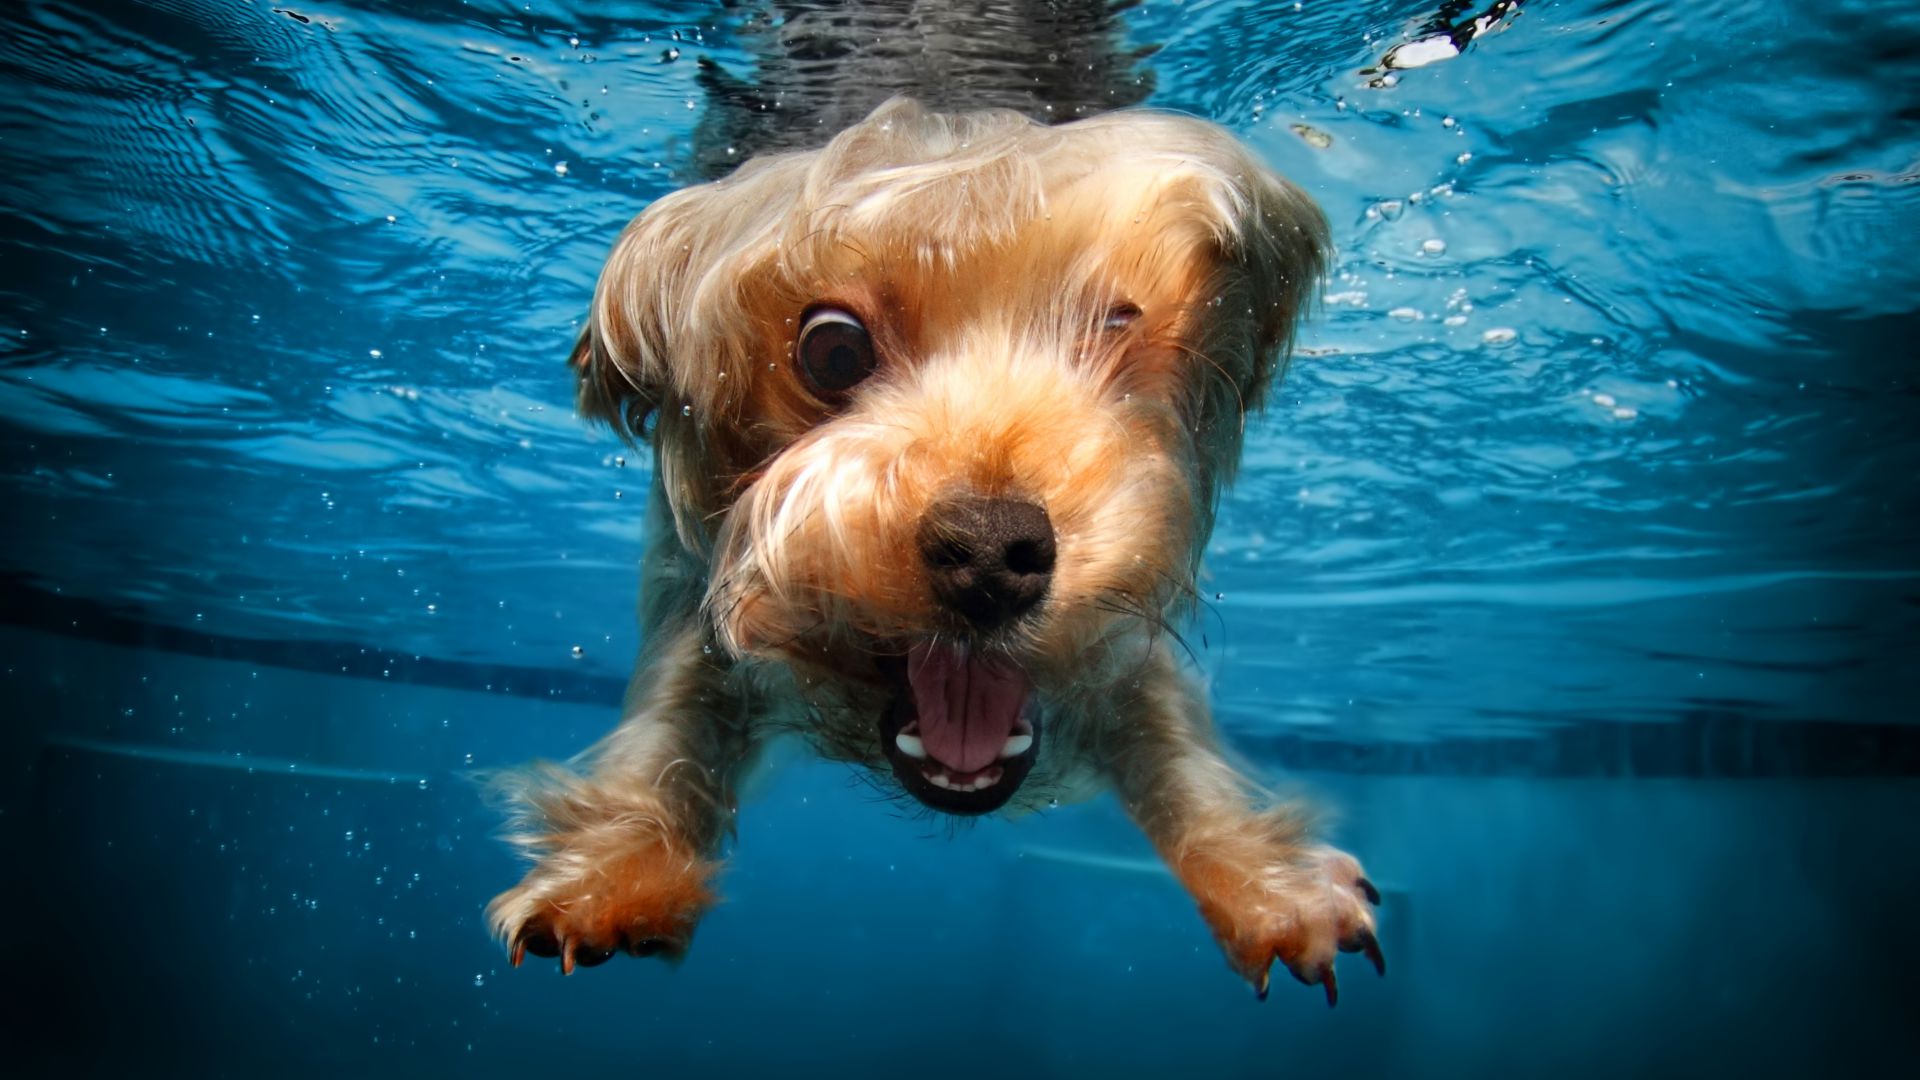 терьер, собака, под водой, милые животные, забавный, terrier, dog, underwater, cute animals, funny (horizontal)